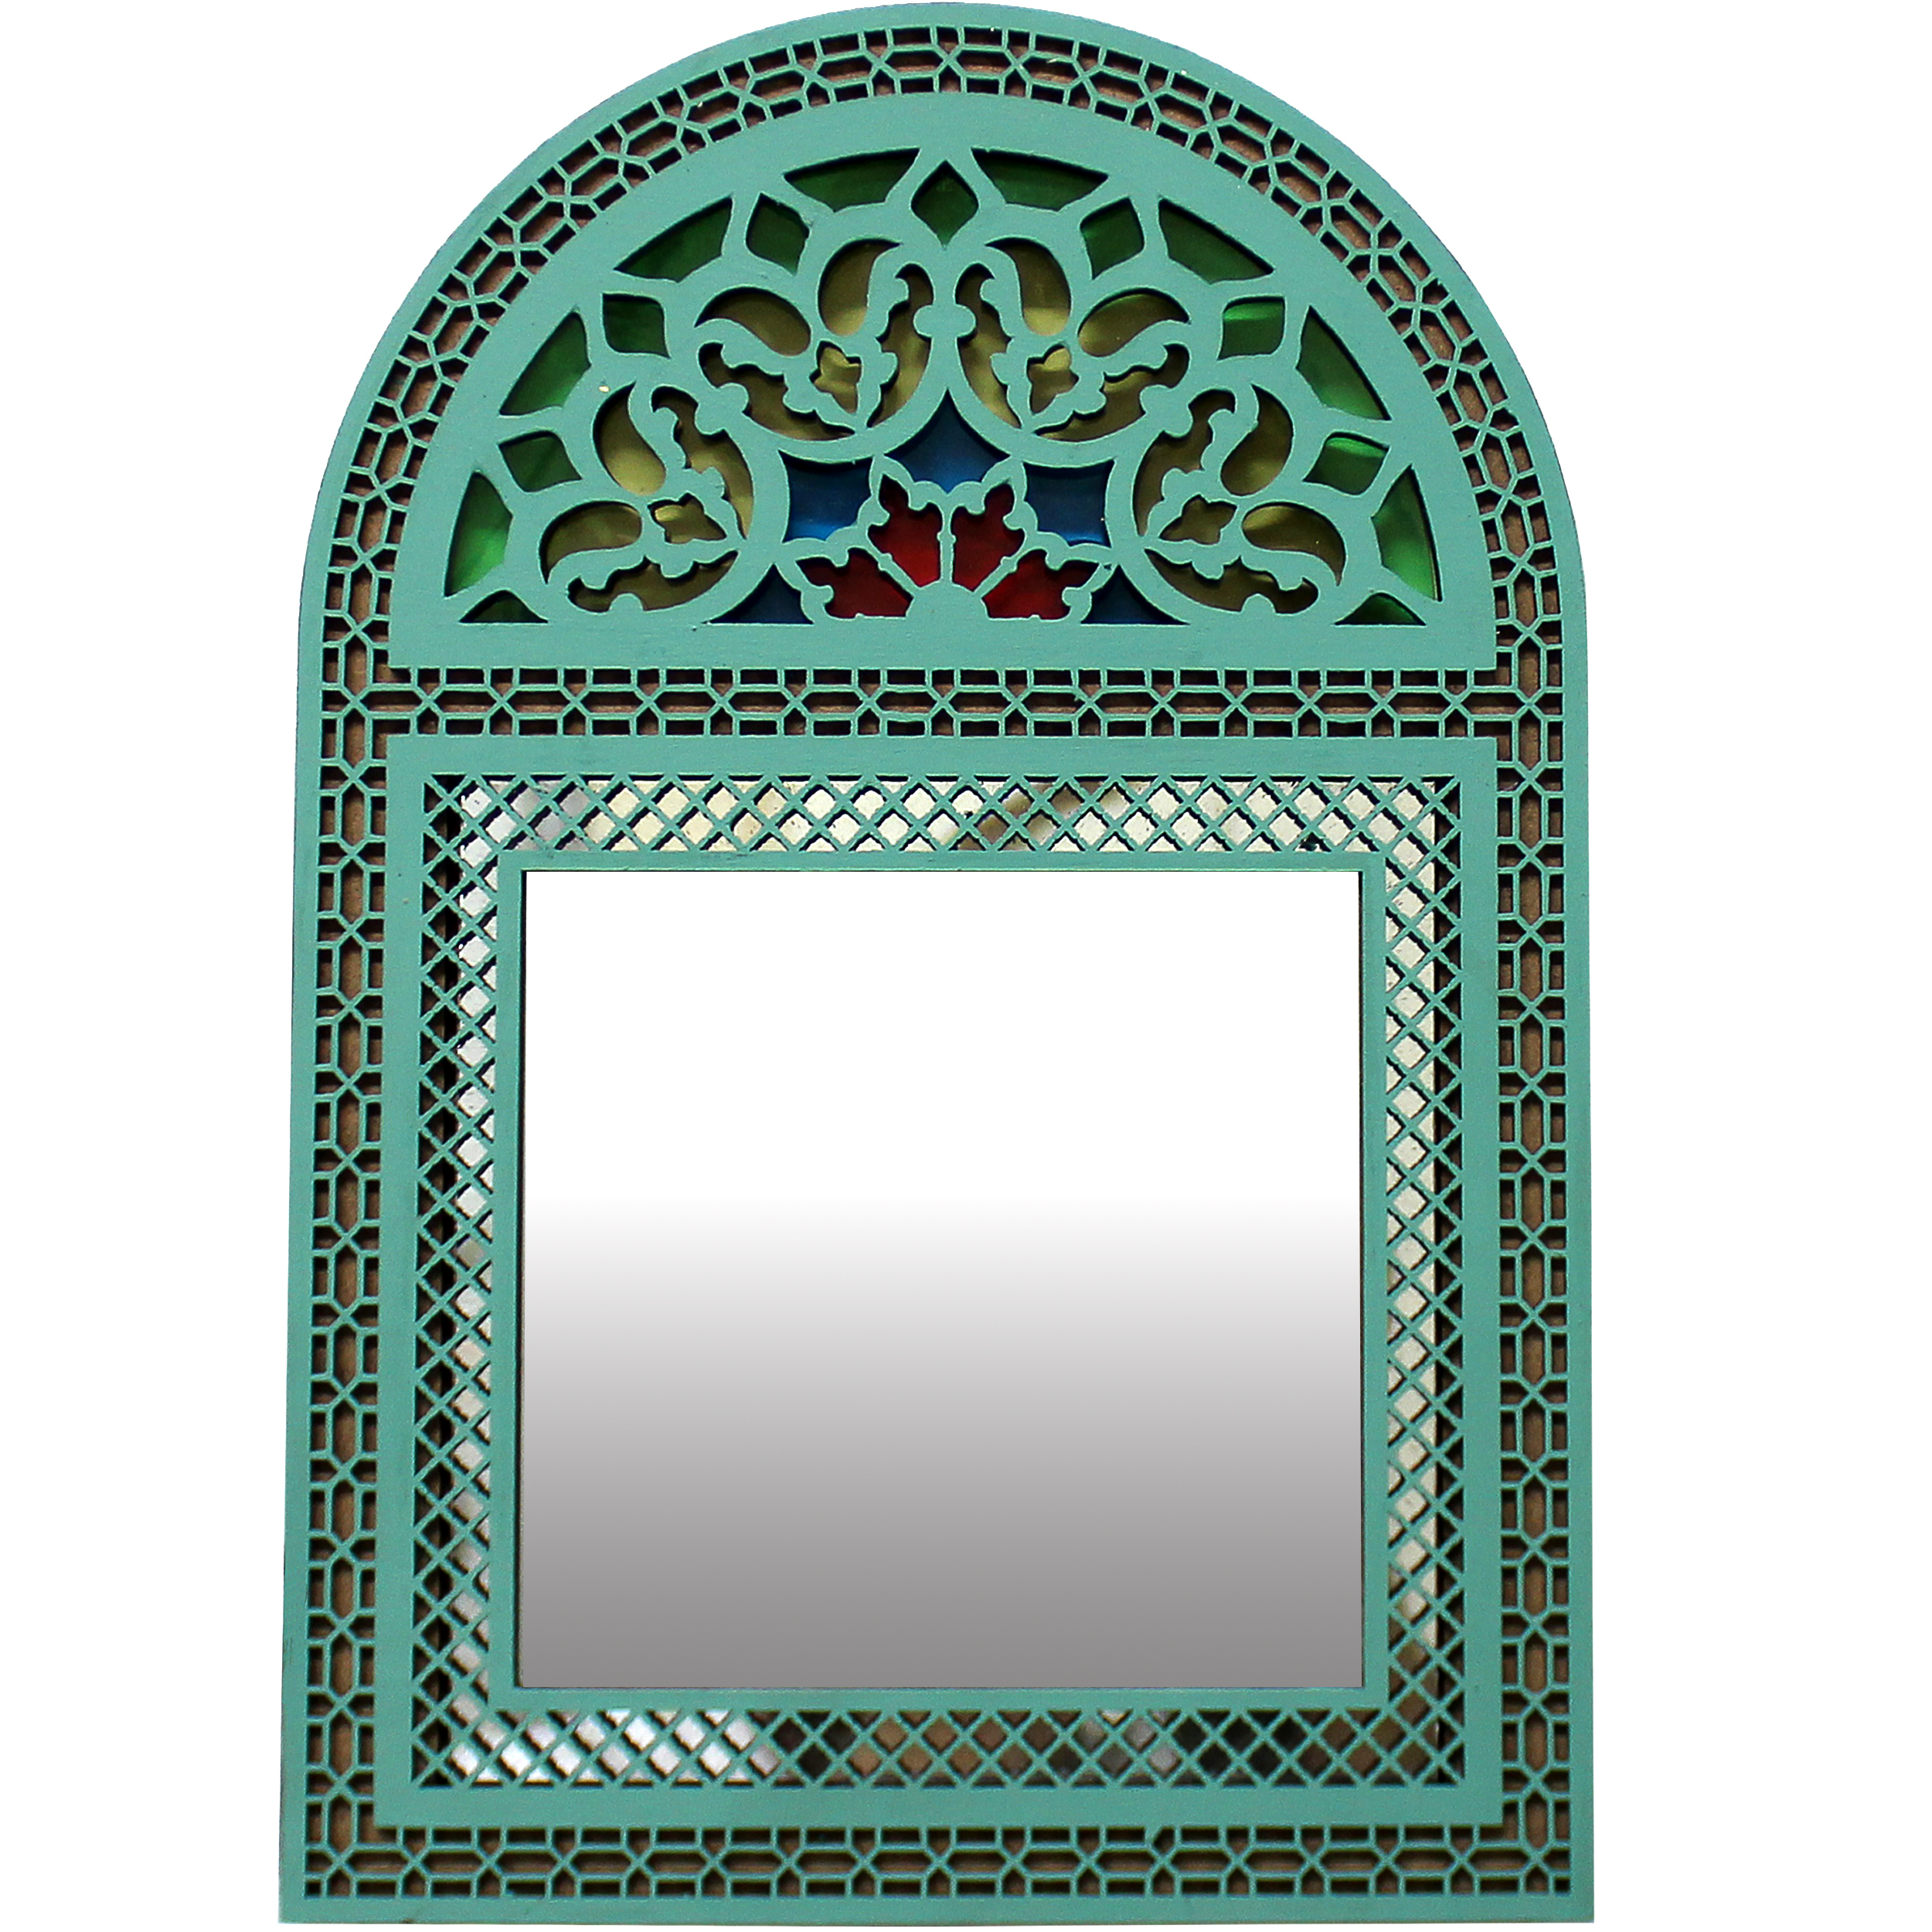 آینه دست نگار طرح پنجره سنتی کد 02-20